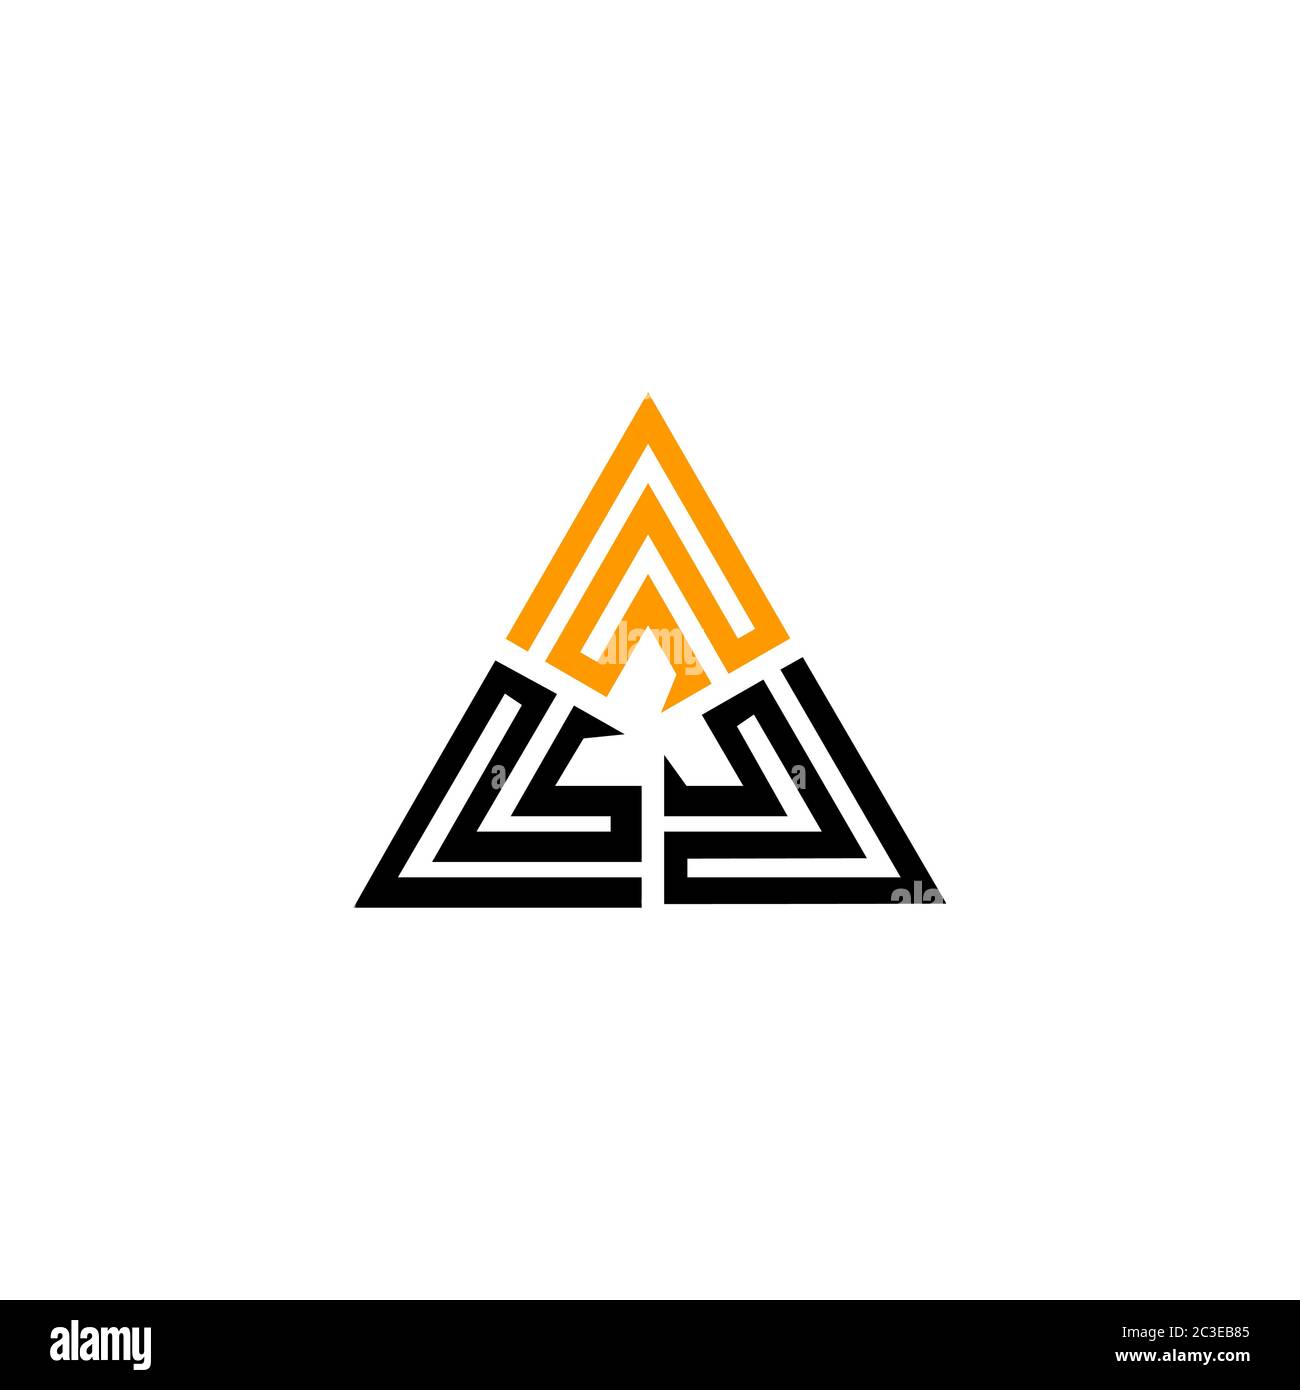 Dreieck Grafik Logo Vorlage, Vektor-Illustration einer Pyramide, isoliert auf weißem Hintergrund. Stock Vektor